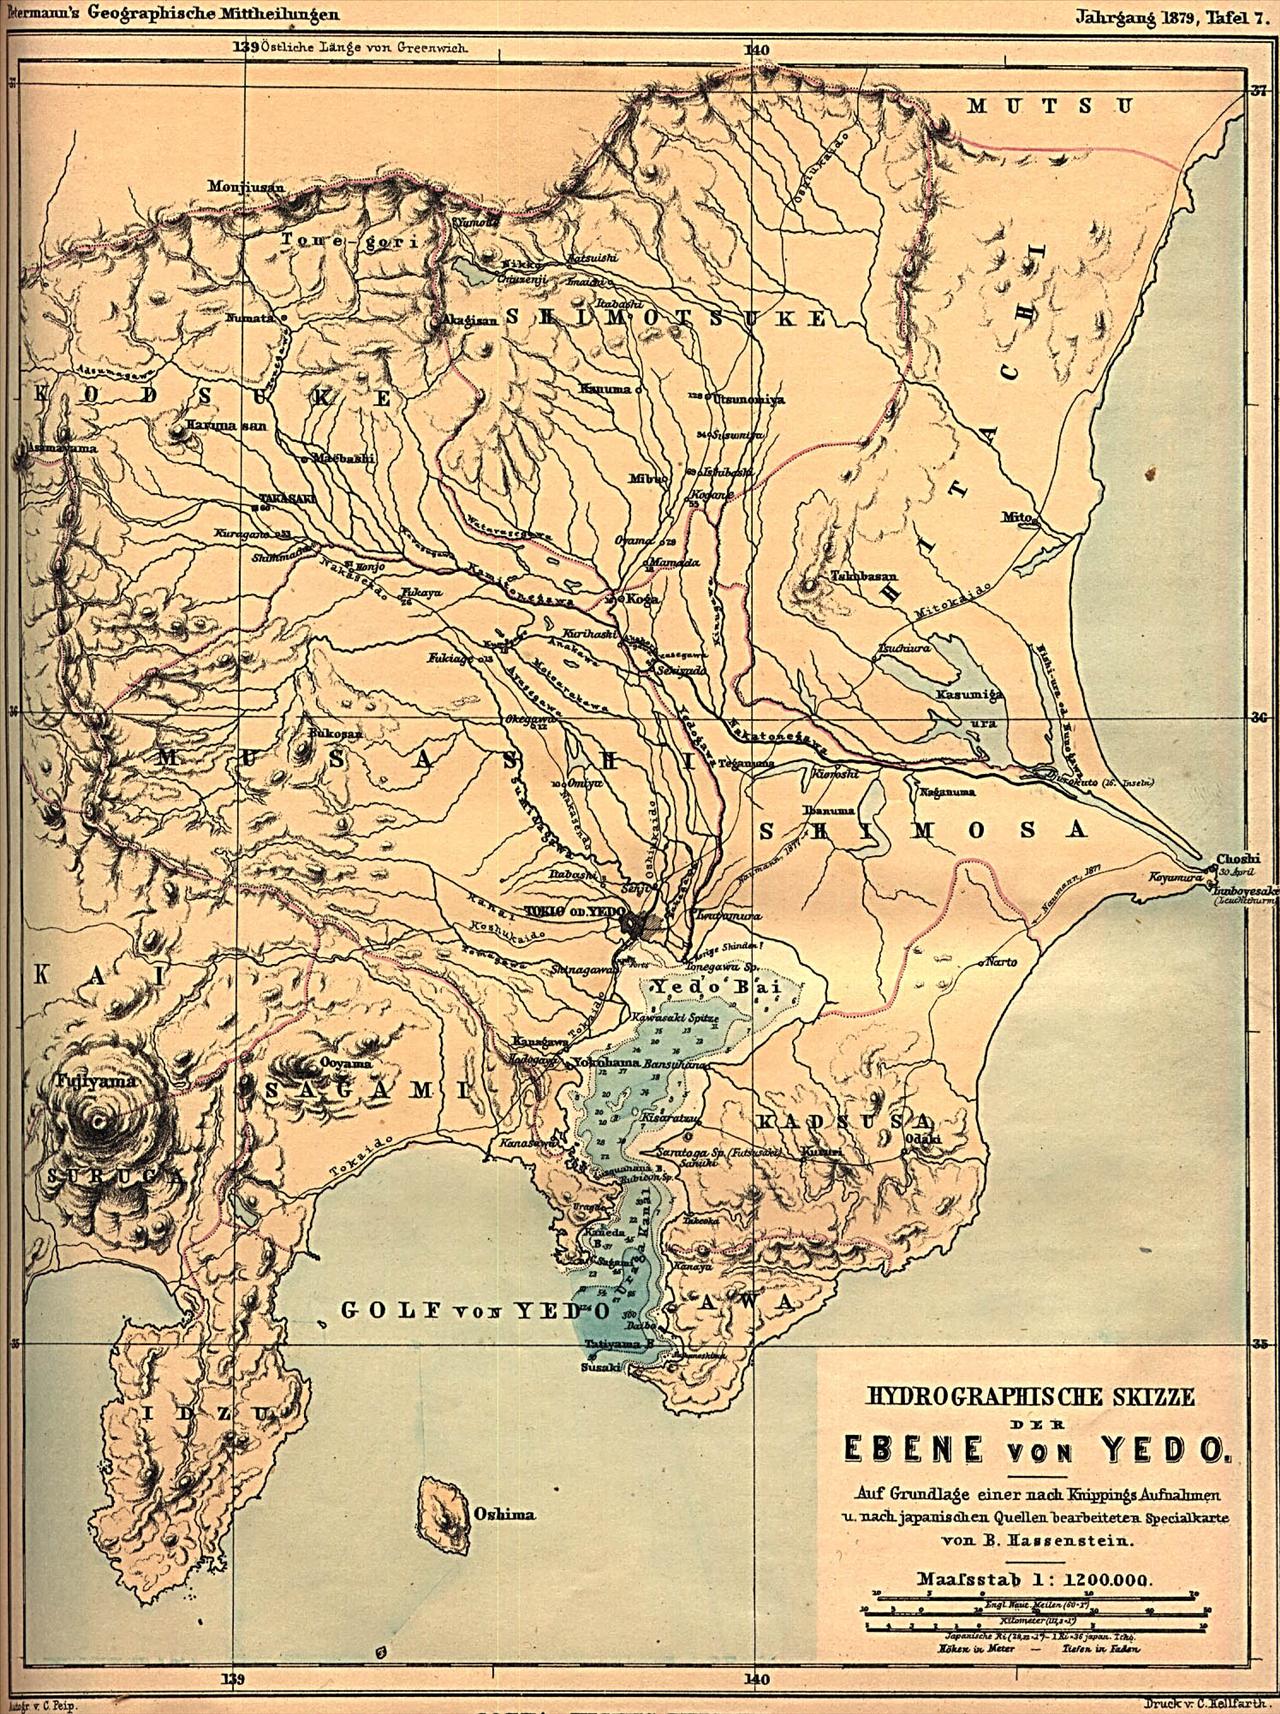 Stare.mapy.z.roznych.czesci.swiata.-.XIX.i.XX.wiek - yedo 18791.jpg